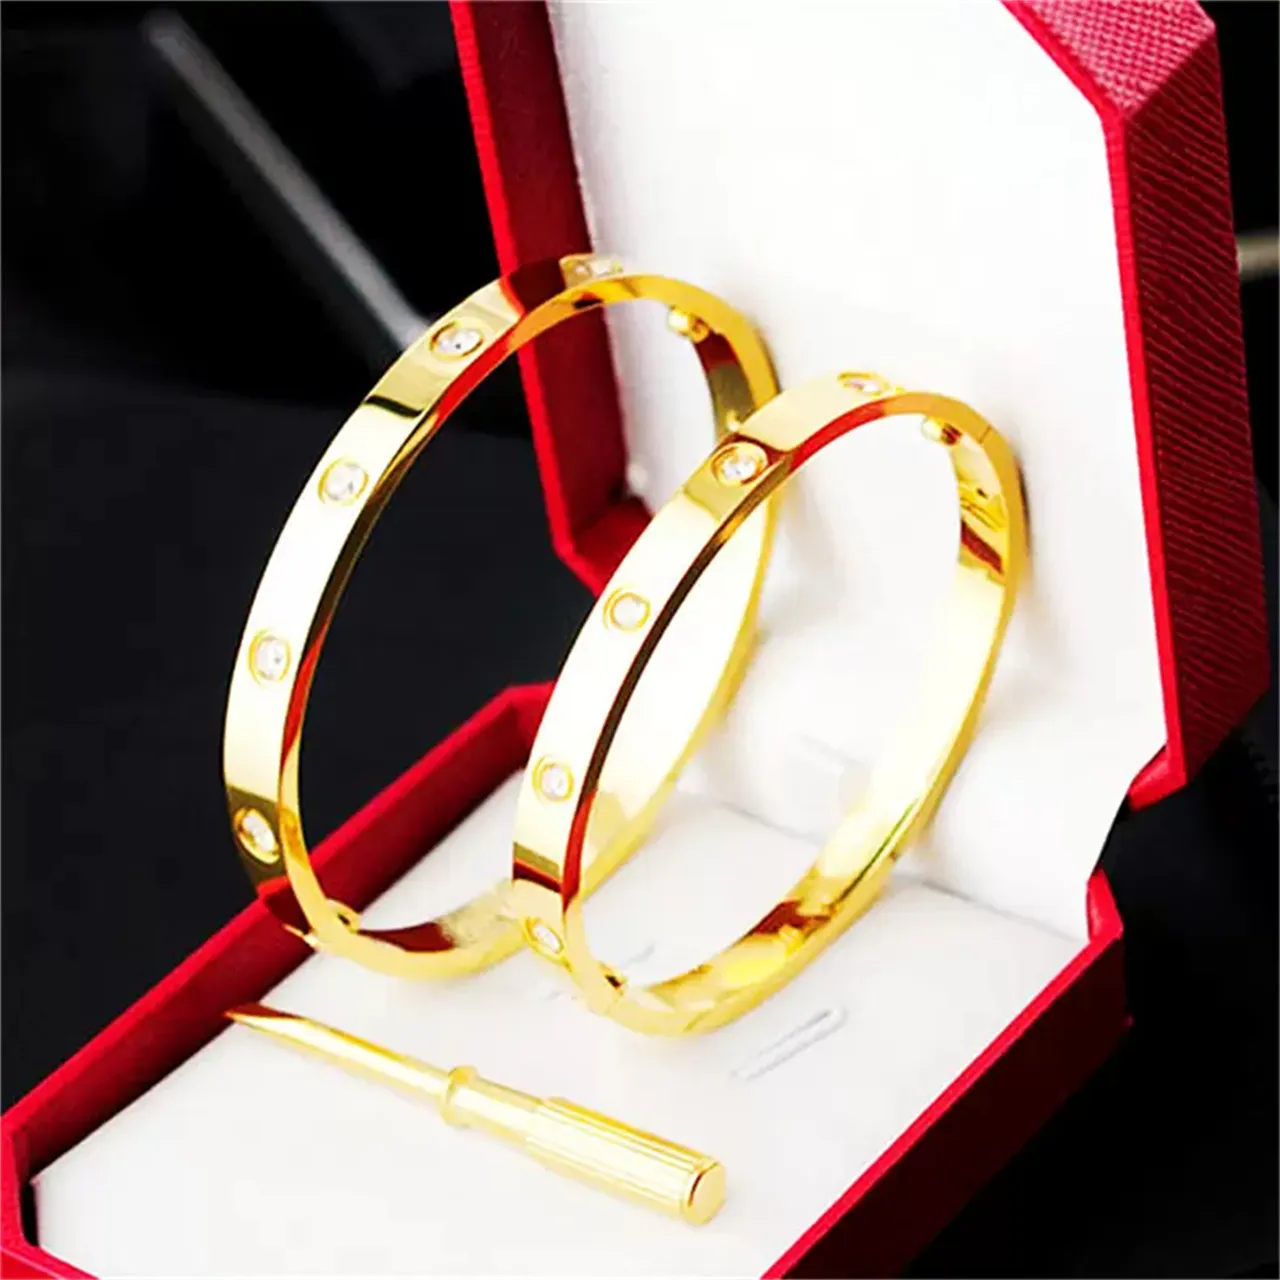 Роскошный гламурный женский браслет Классический браслет для ногтей Унисекс День святого Валентина Свадебный подарок 18K Титановый стальной сплав Нержавеющая сталь